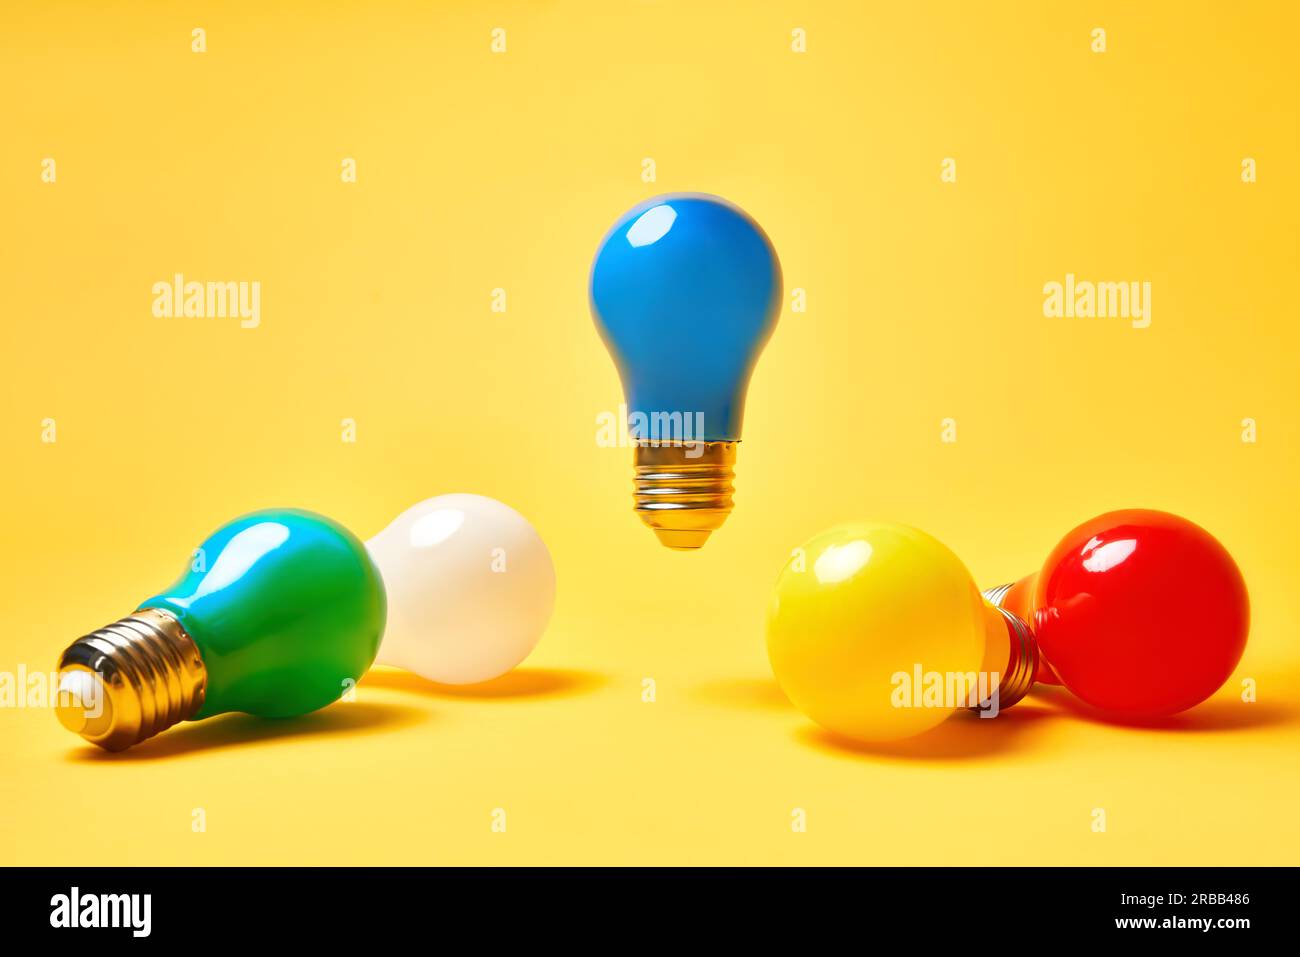 Layout creativo con lampadine multicolore su sfondo giallo. La lampadina blu levita in aria. Simbolo dell'idea, creatività aziendale, ispirazione Foto Stock